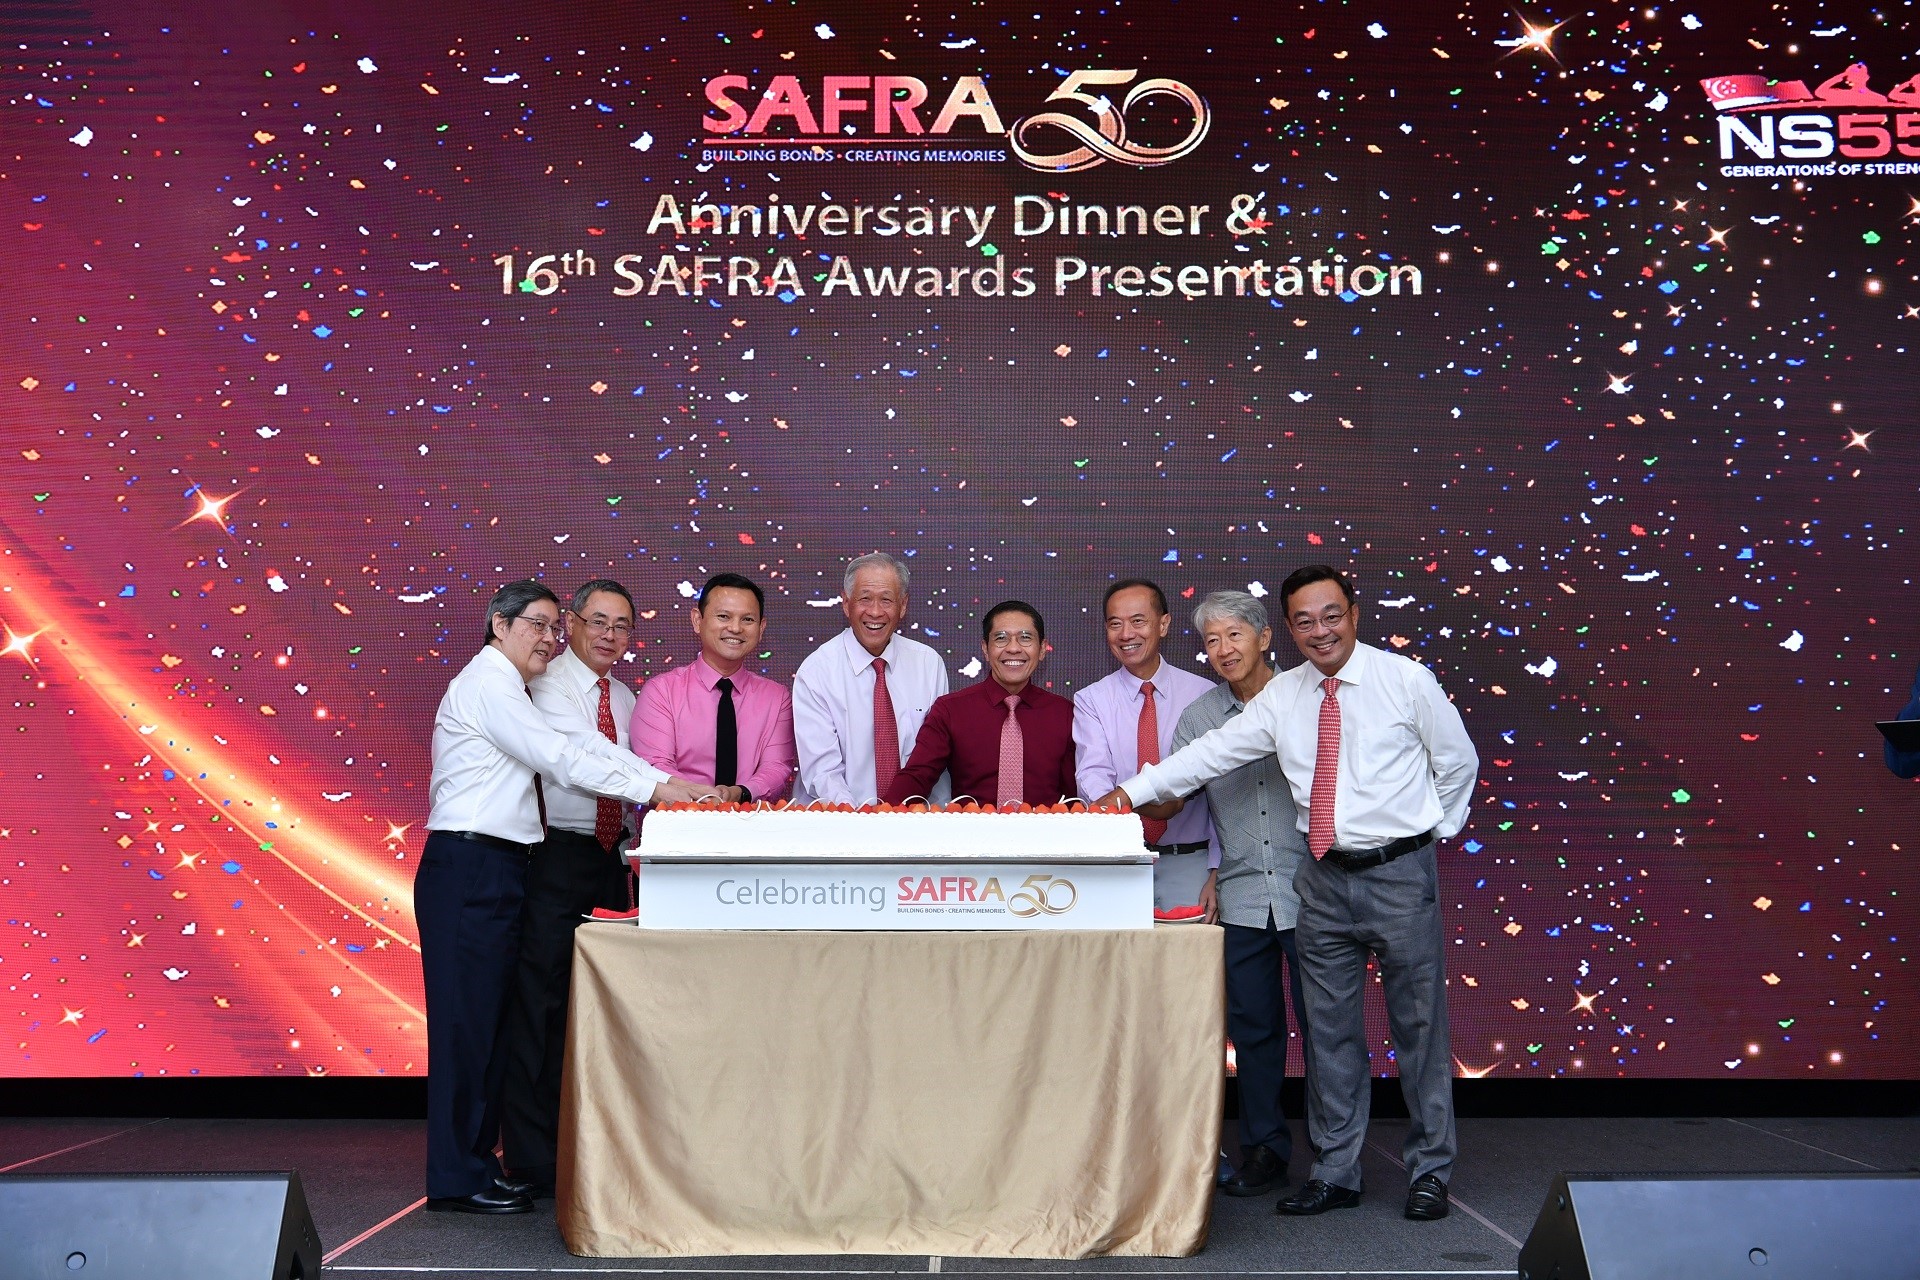 SAFRA celebrates 50 years of bringing NSmen together